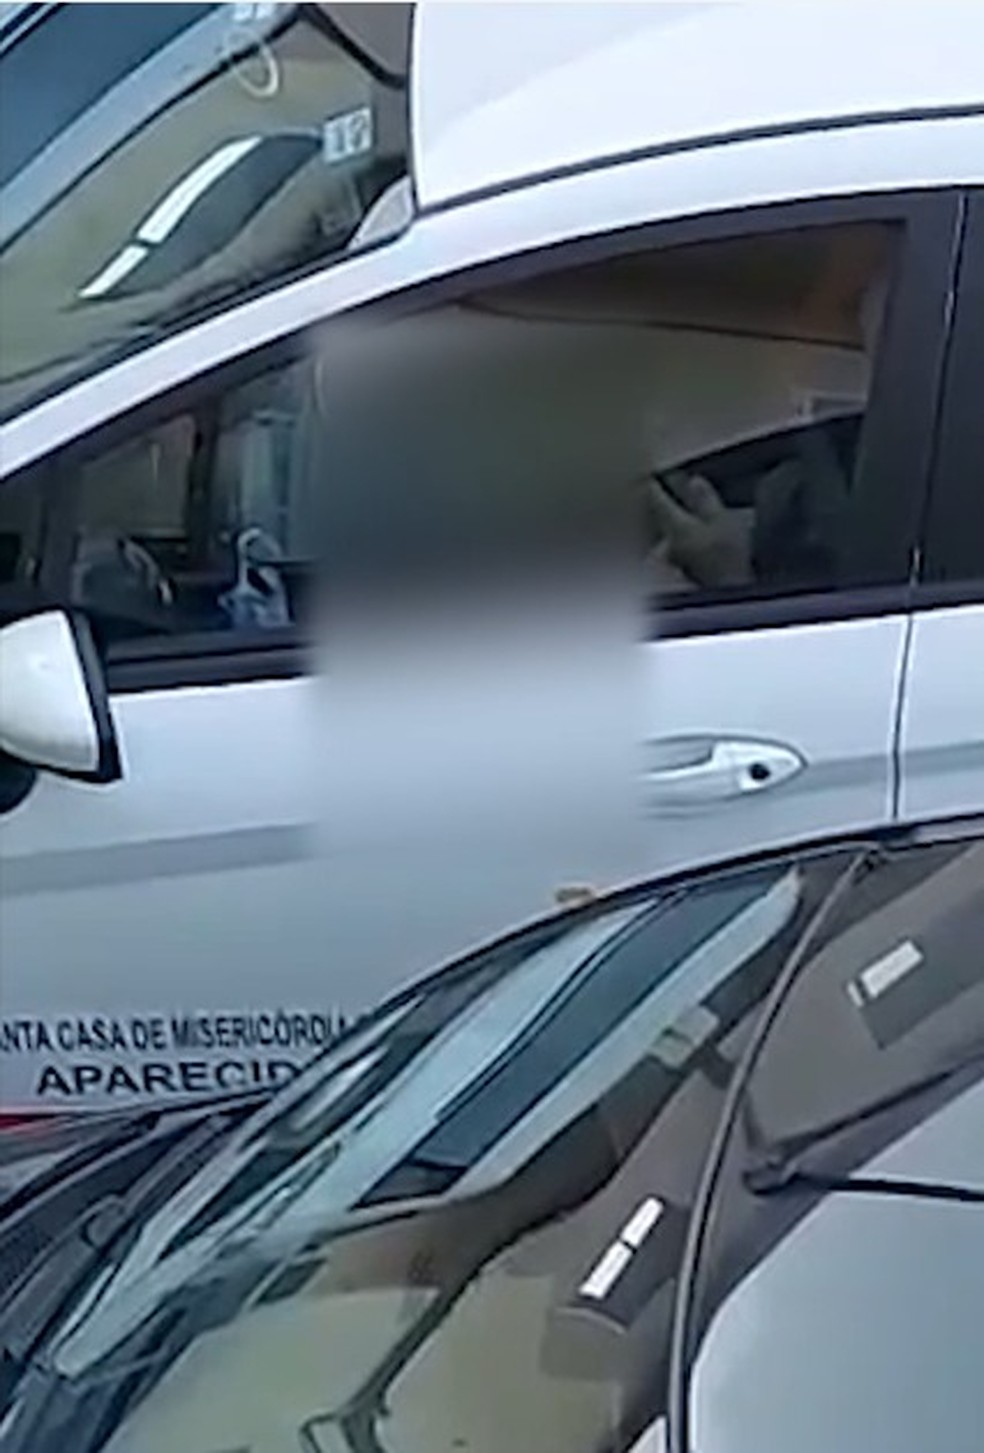 Motorista foi flagrado se masturbando em estacionamento de hospital — Foto: Reprodução